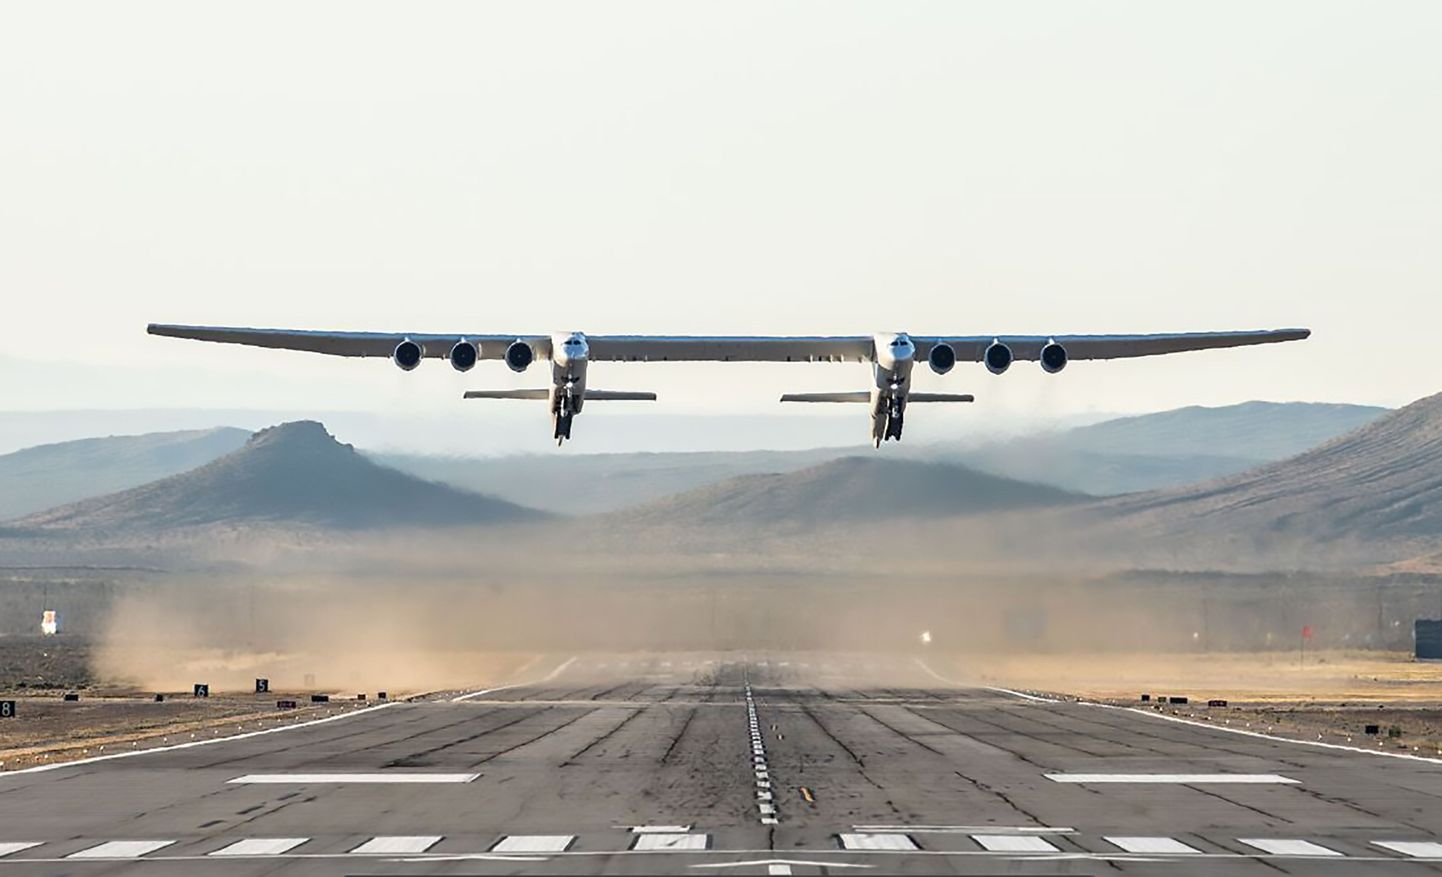 Pasaulē lielākā lidmašīna "Stratolaunch" 